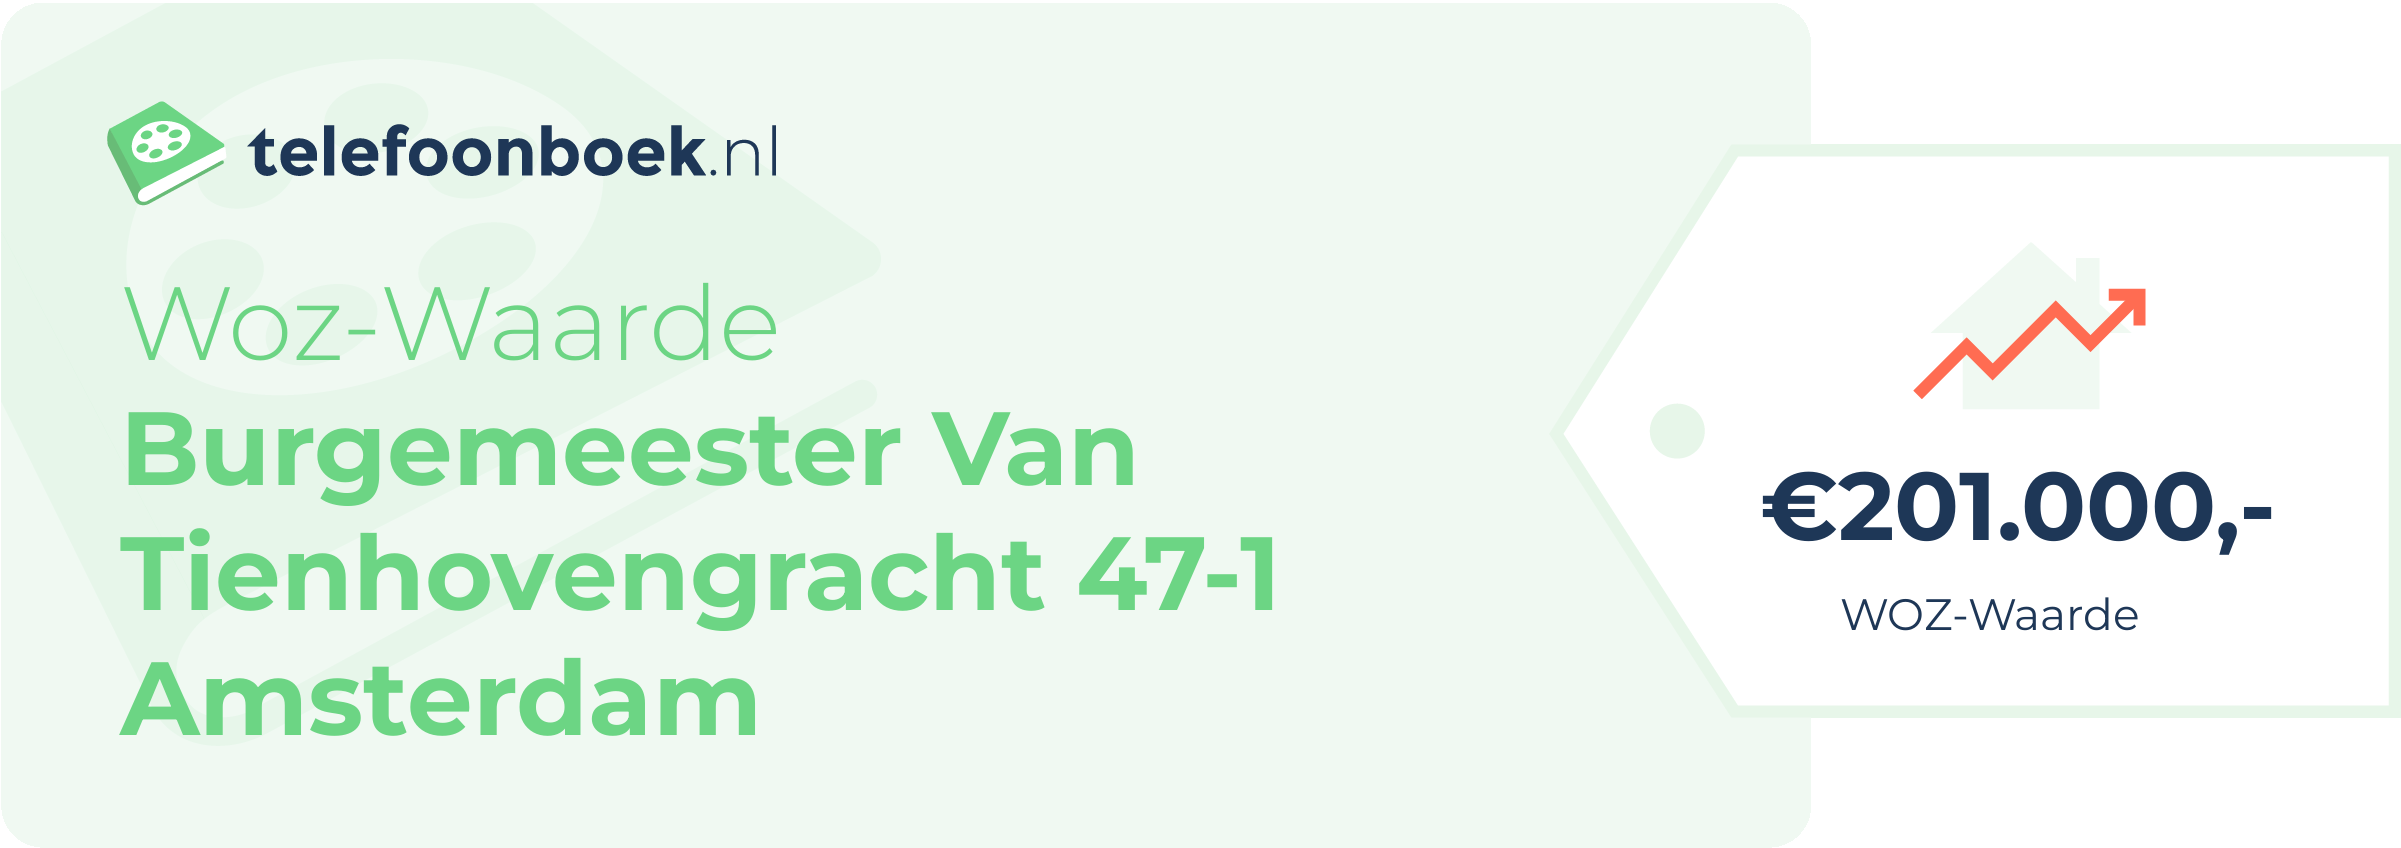 WOZ-waarde Burgemeester Van Tienhovengracht 47-1 Amsterdam